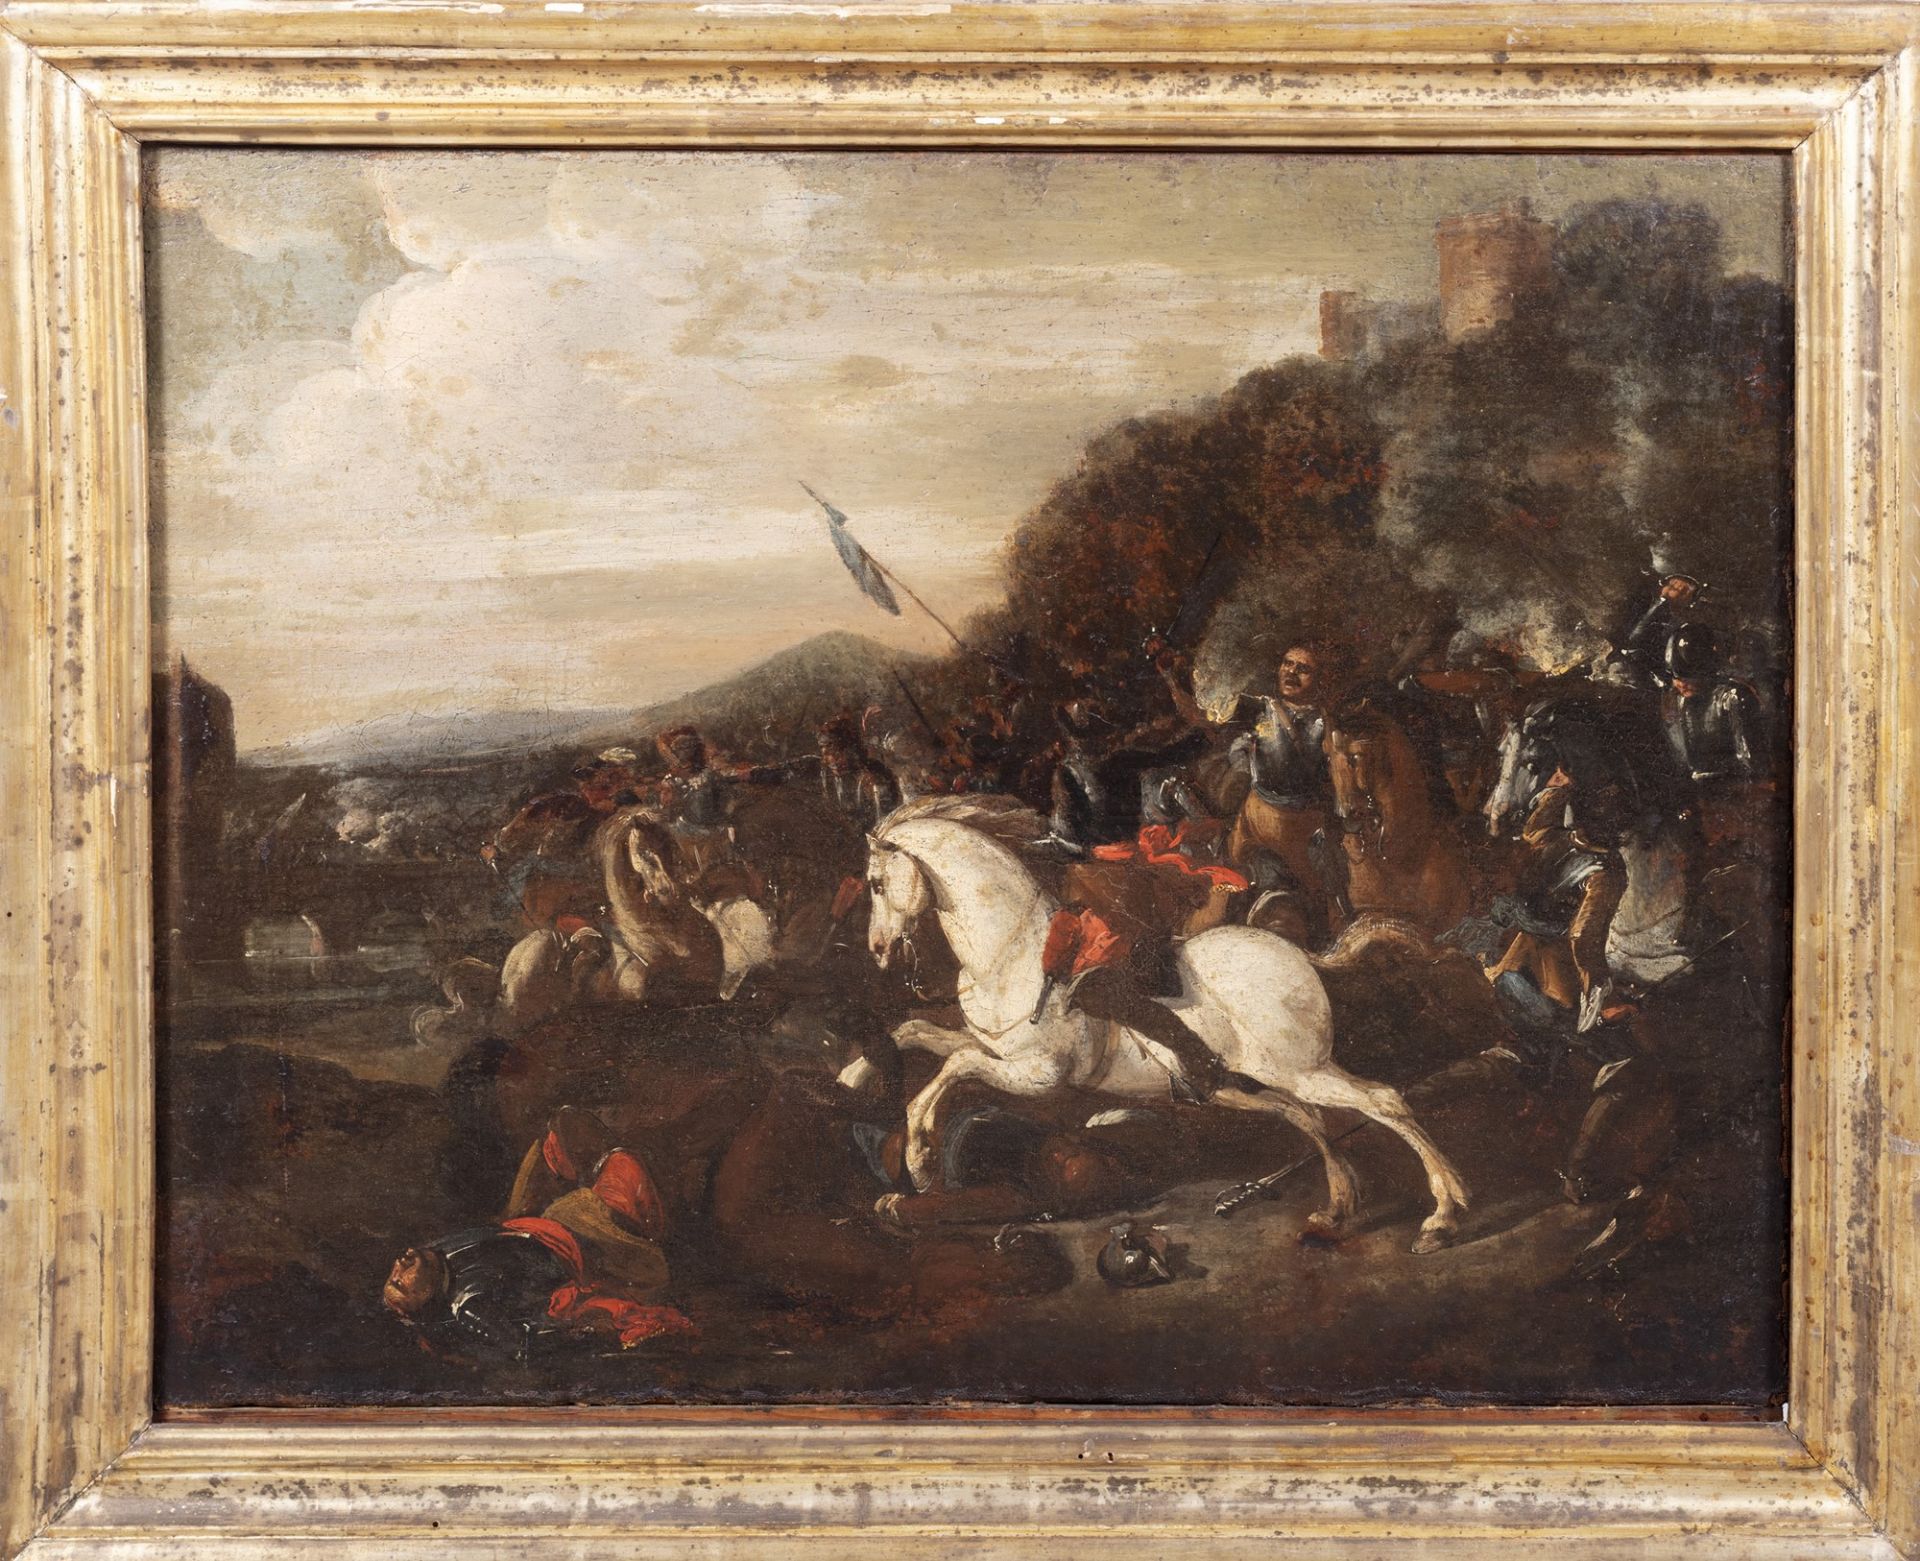 Scuola italiana, secolo XVII - Battle scene with castle in the distance